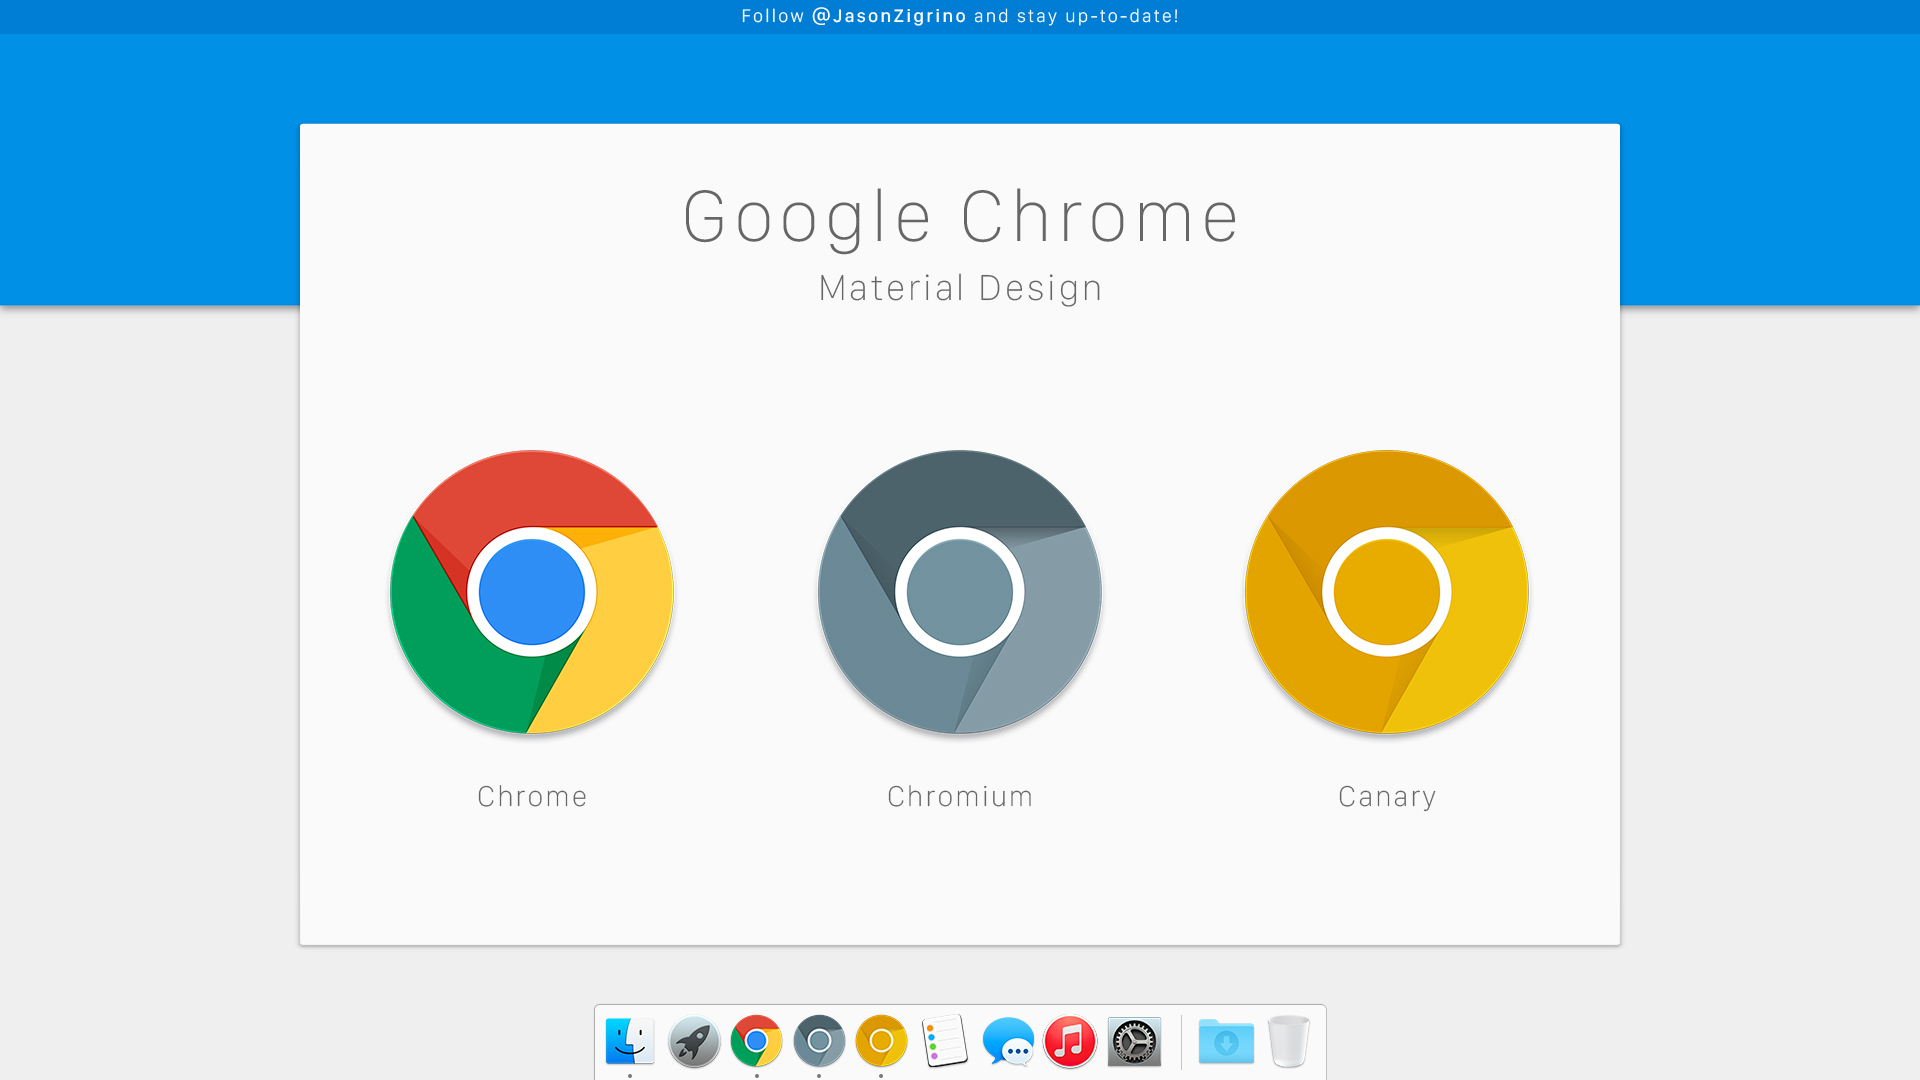 Google Chrome Material Design by JasonZigrino on DeviantArt